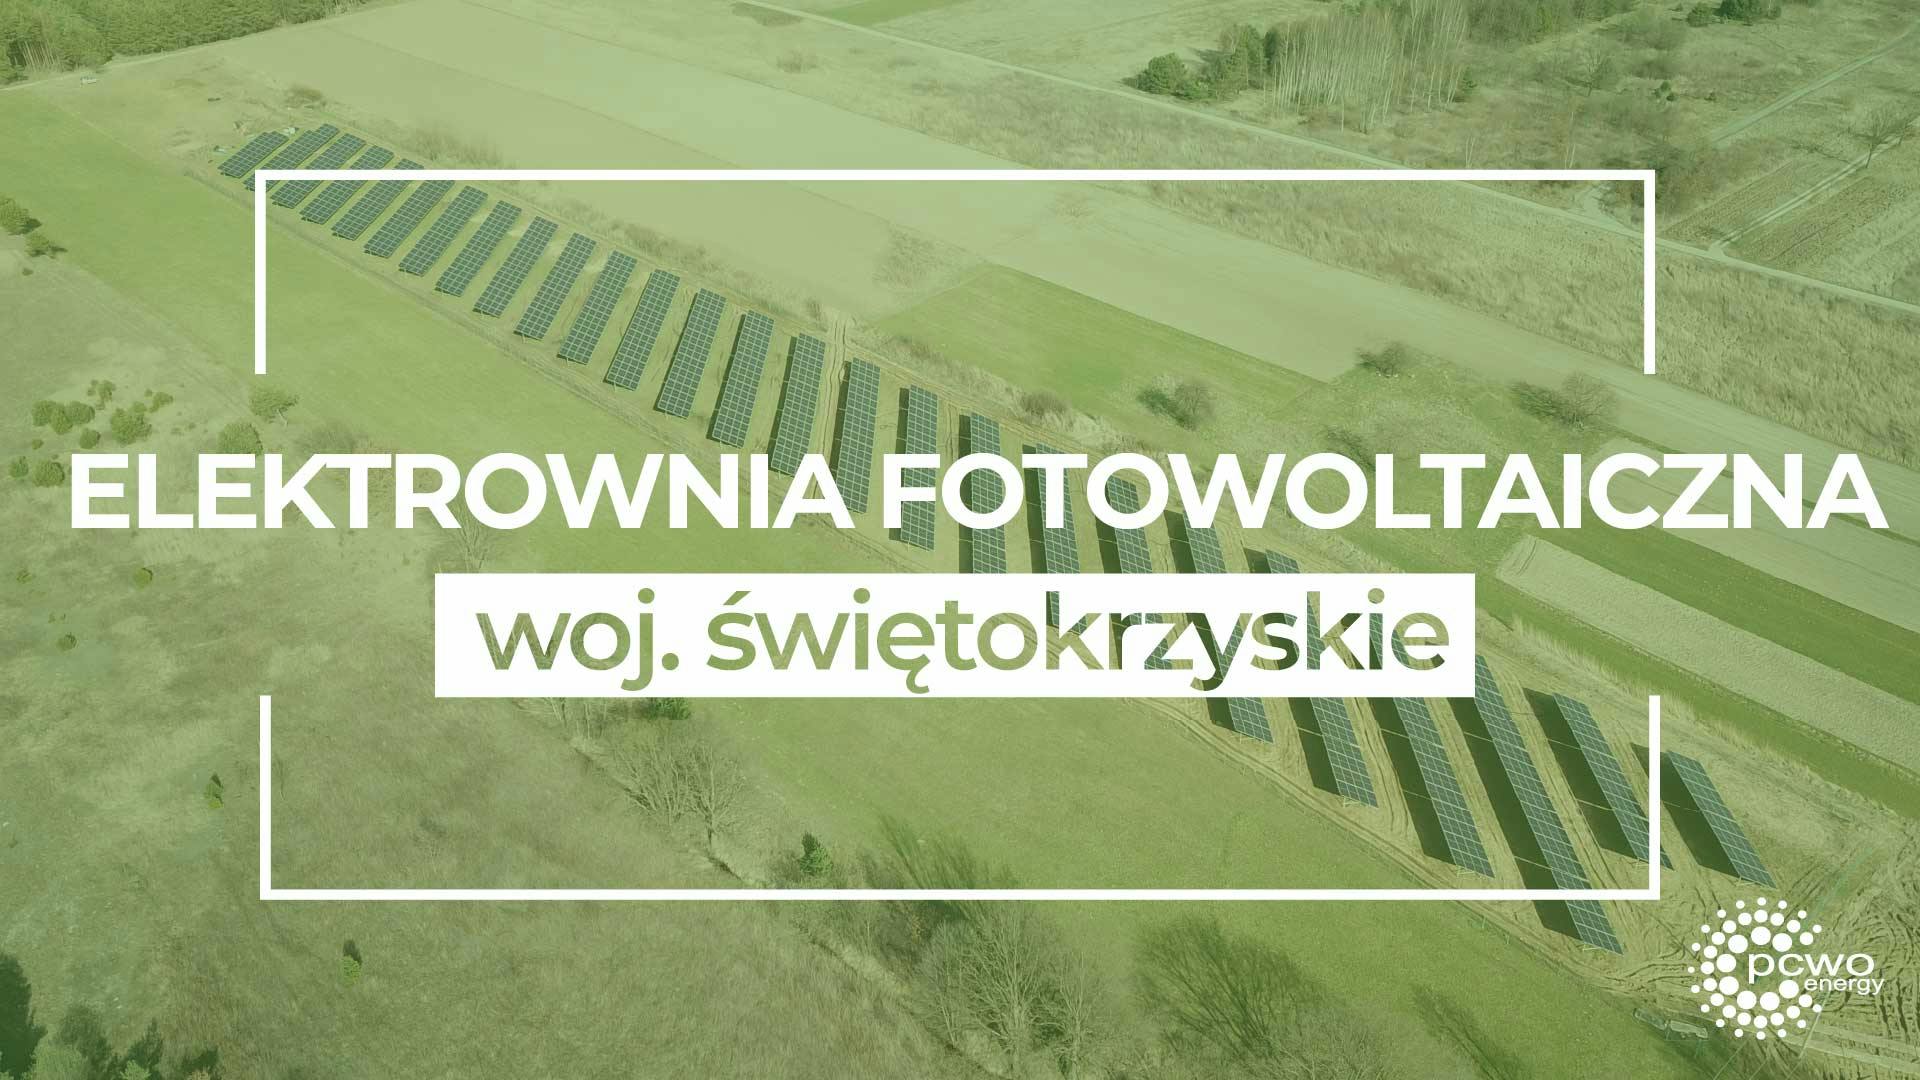 Cover Image for Farma fotowoltaiczna w woj. świętokrzyskim